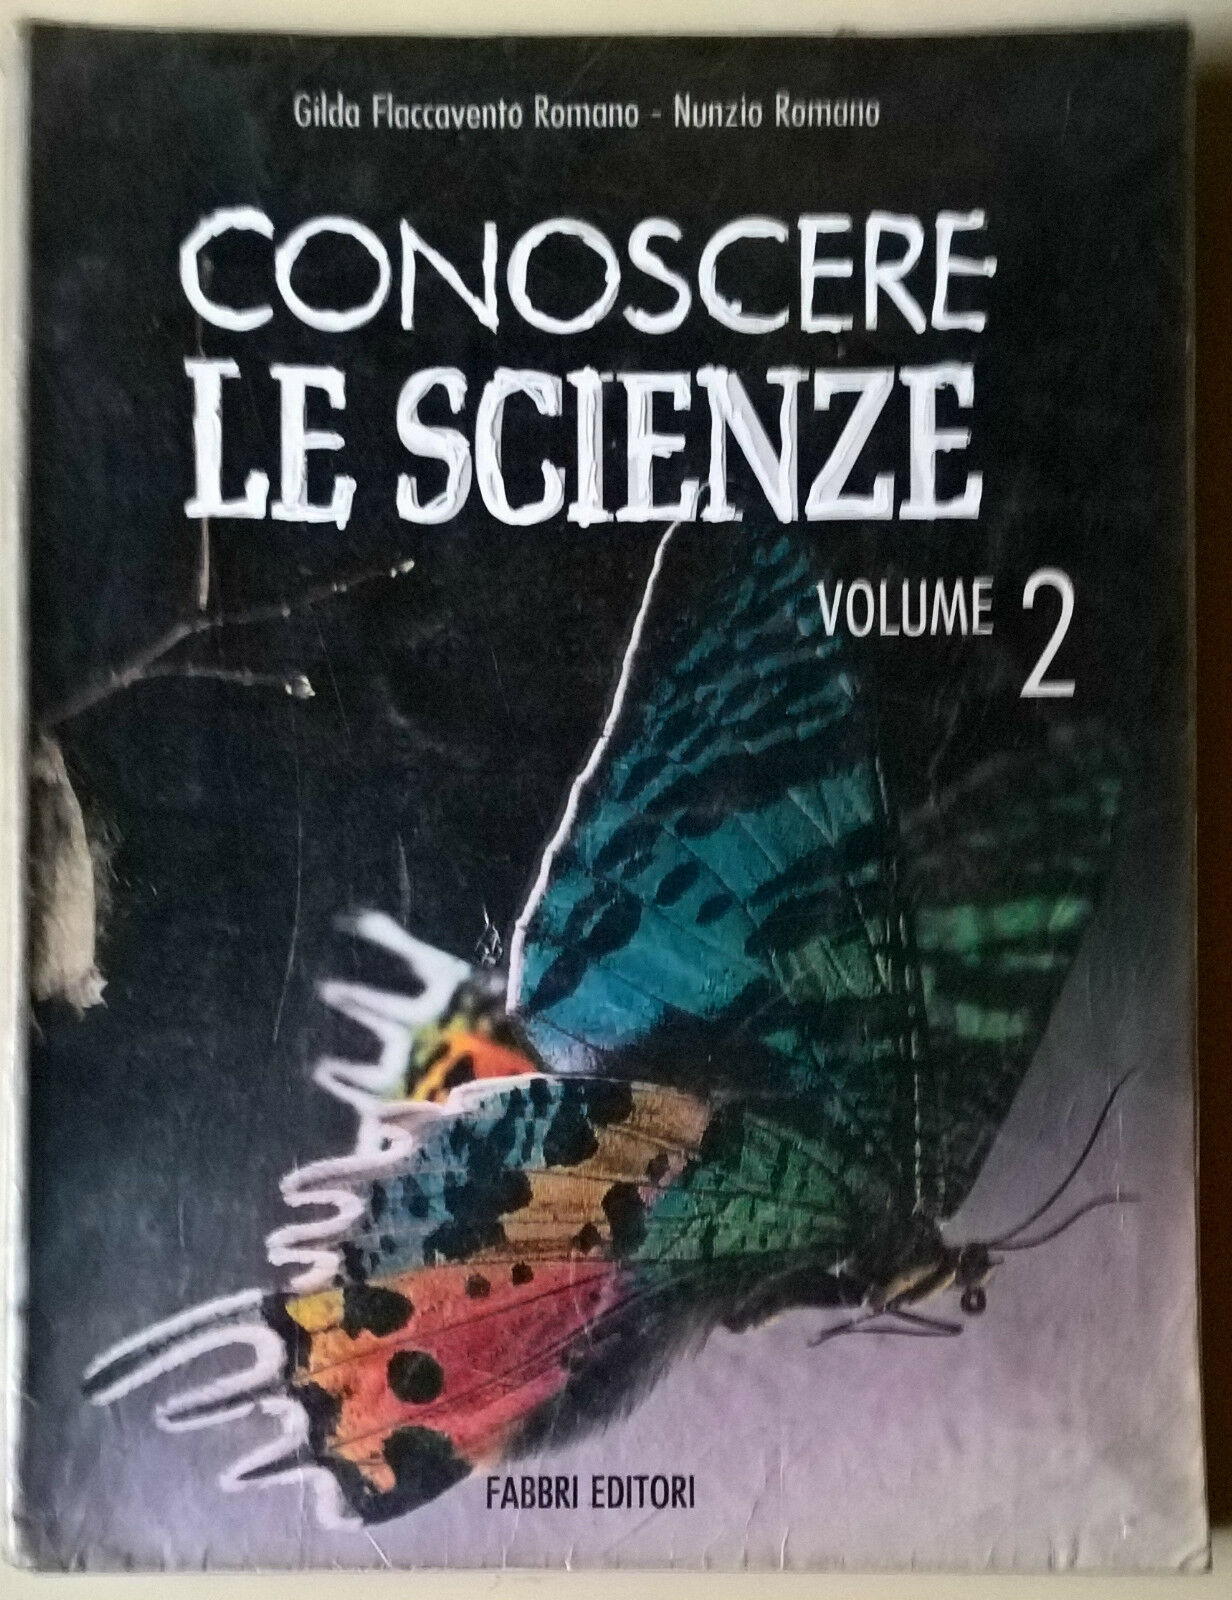 Conoscere le scienze Vol. 2 - G. F. Romano, N. Romano - 1991, Fabbri - L